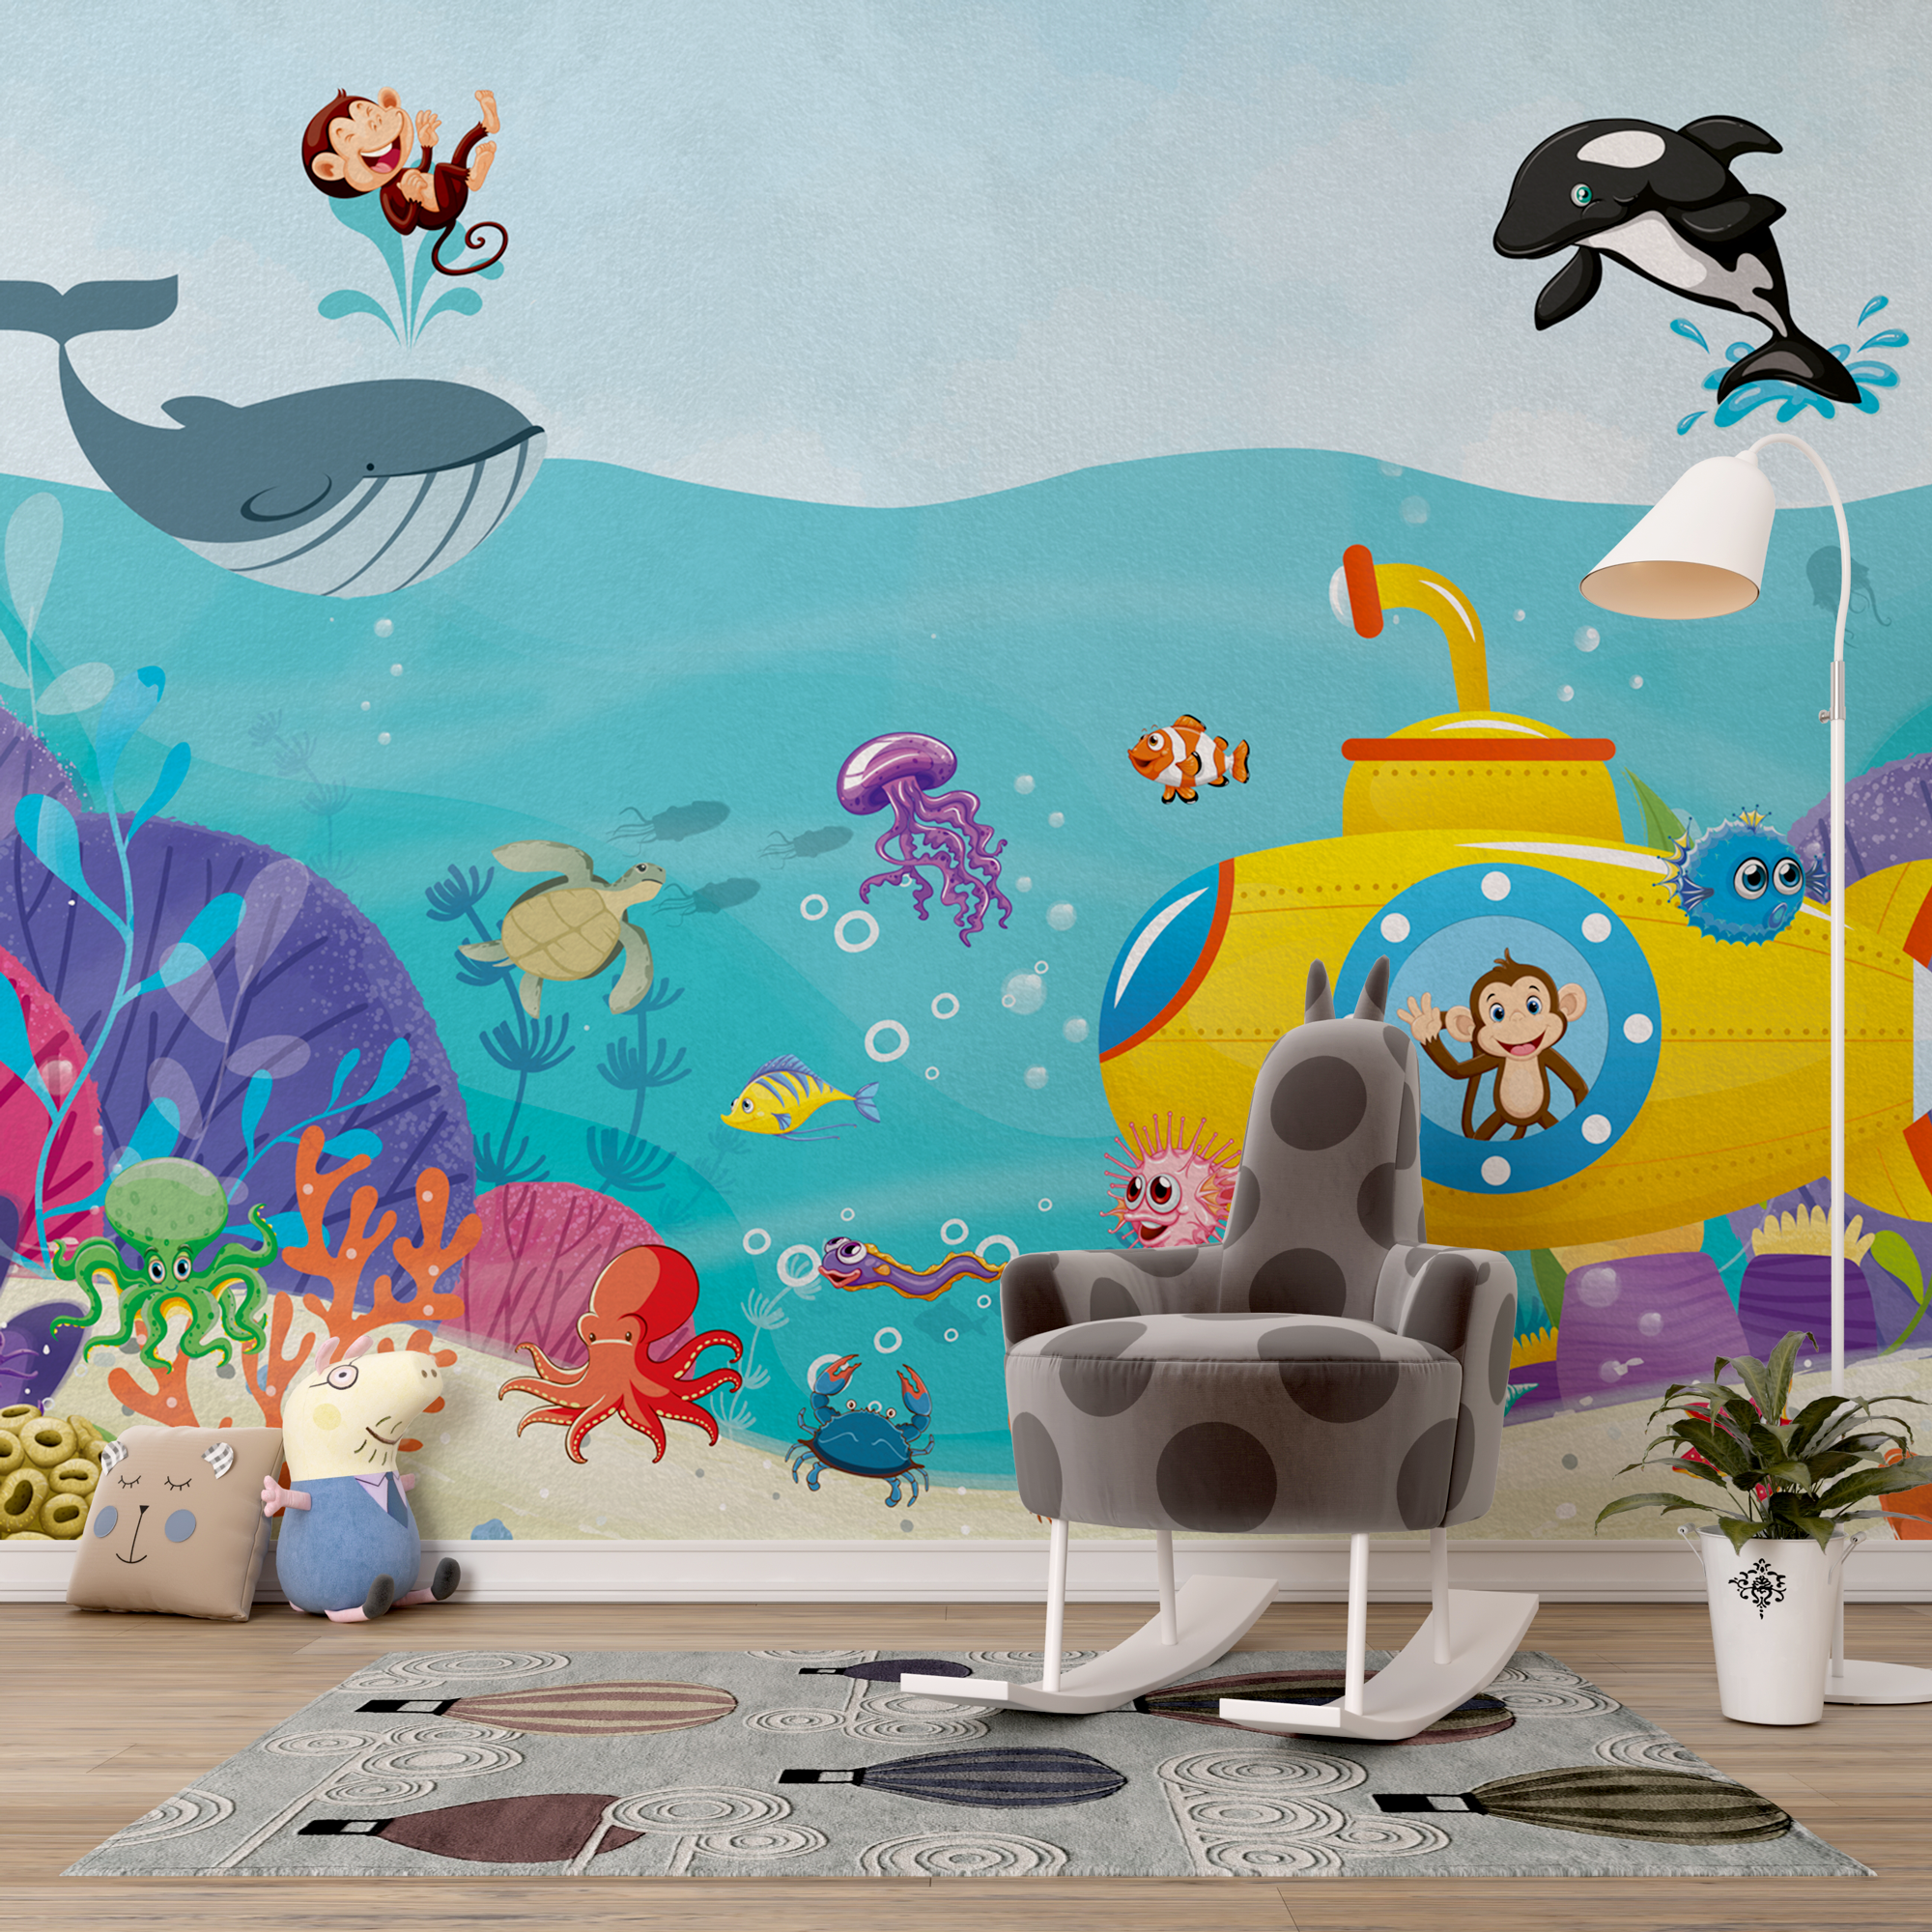 Ocean Creatures Party - Kids Room Wallpaper Mural